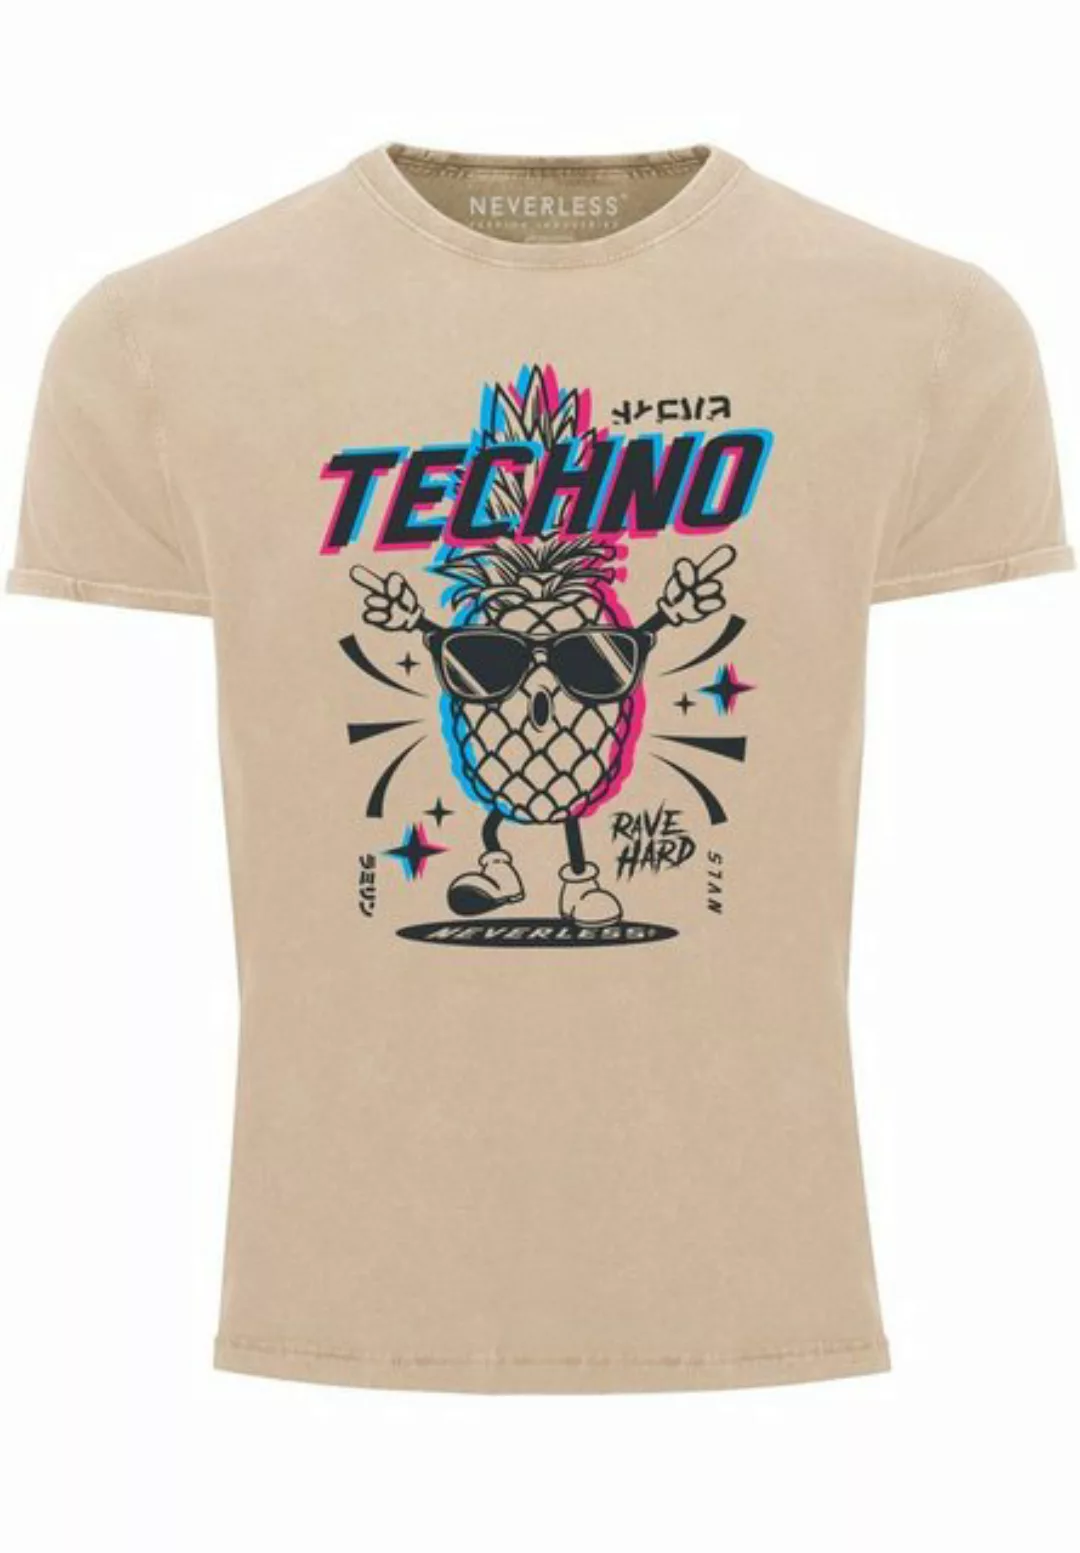 Neverless Print-Shirt Herren Vintage Shirt Techno Tanzen Lustig Ananas Rave günstig online kaufen